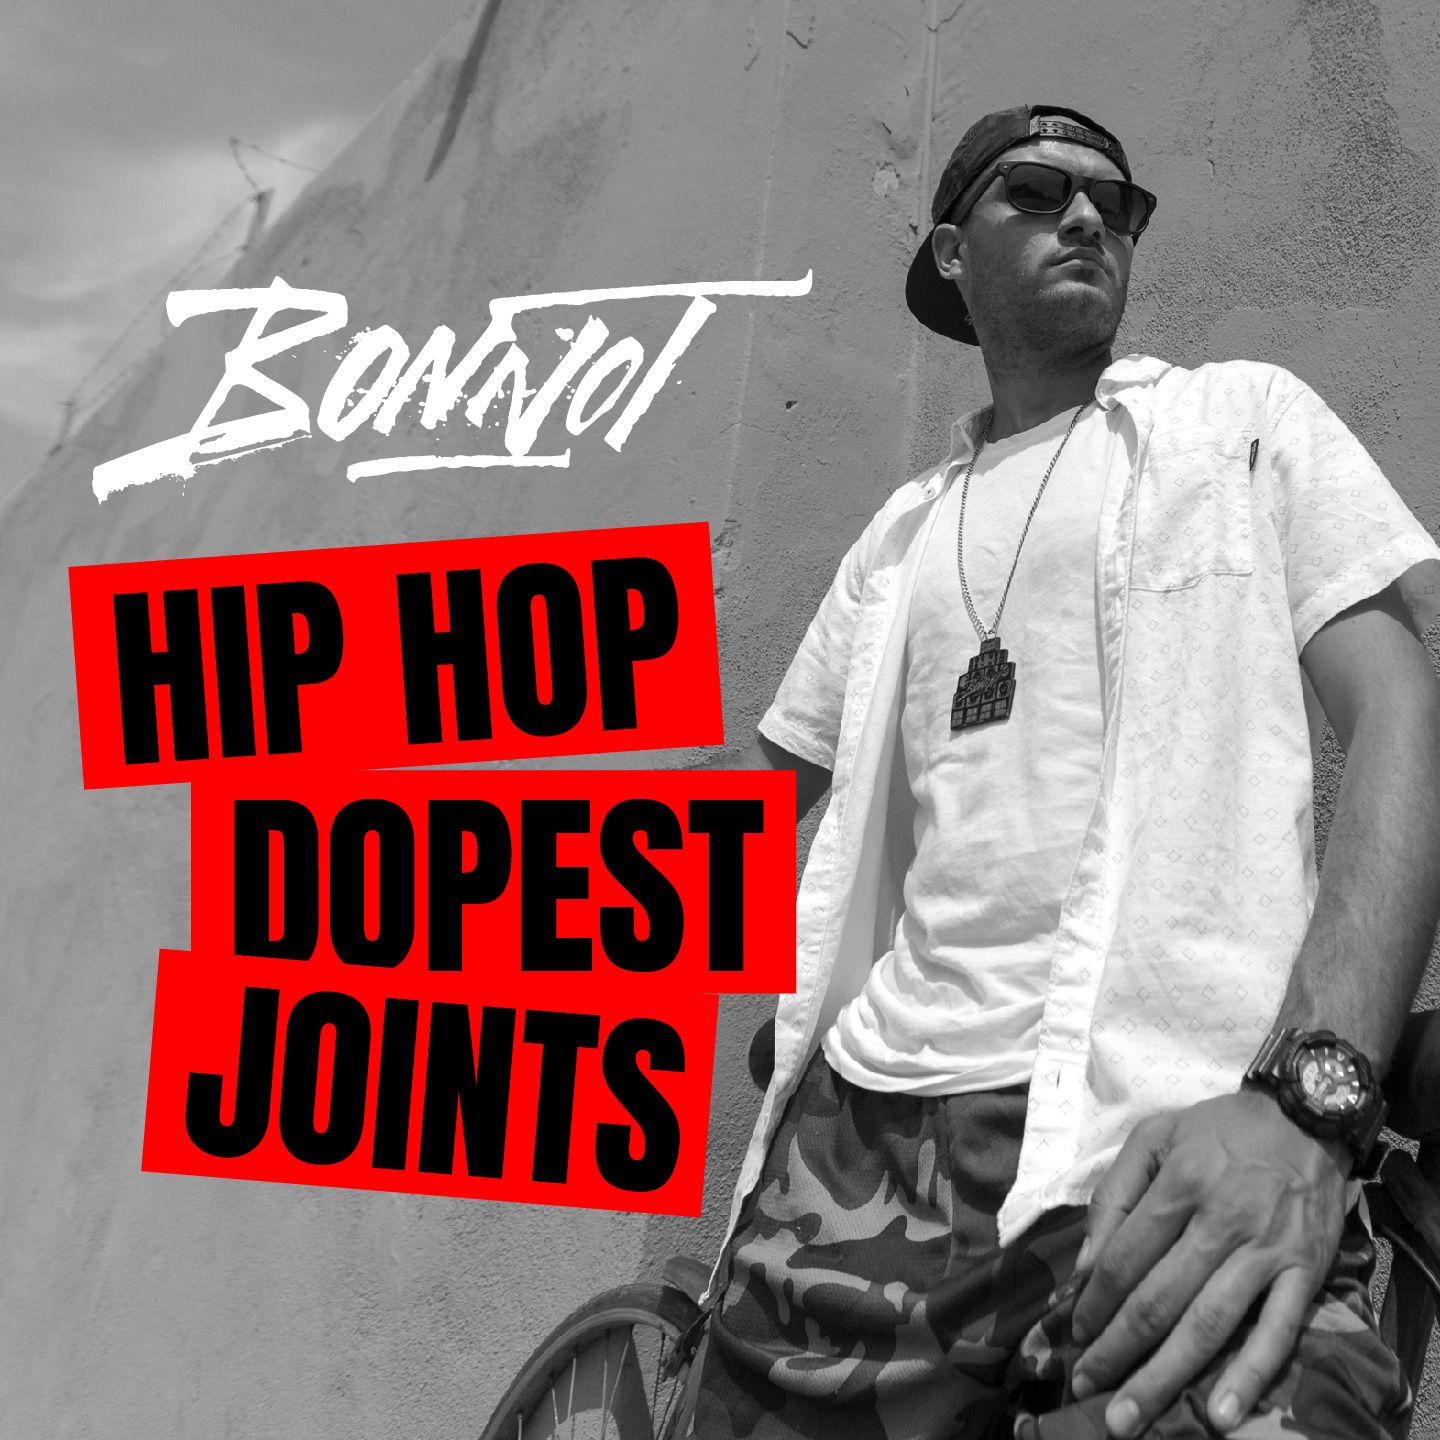 Bonnot Hip Hop Dopest Joints